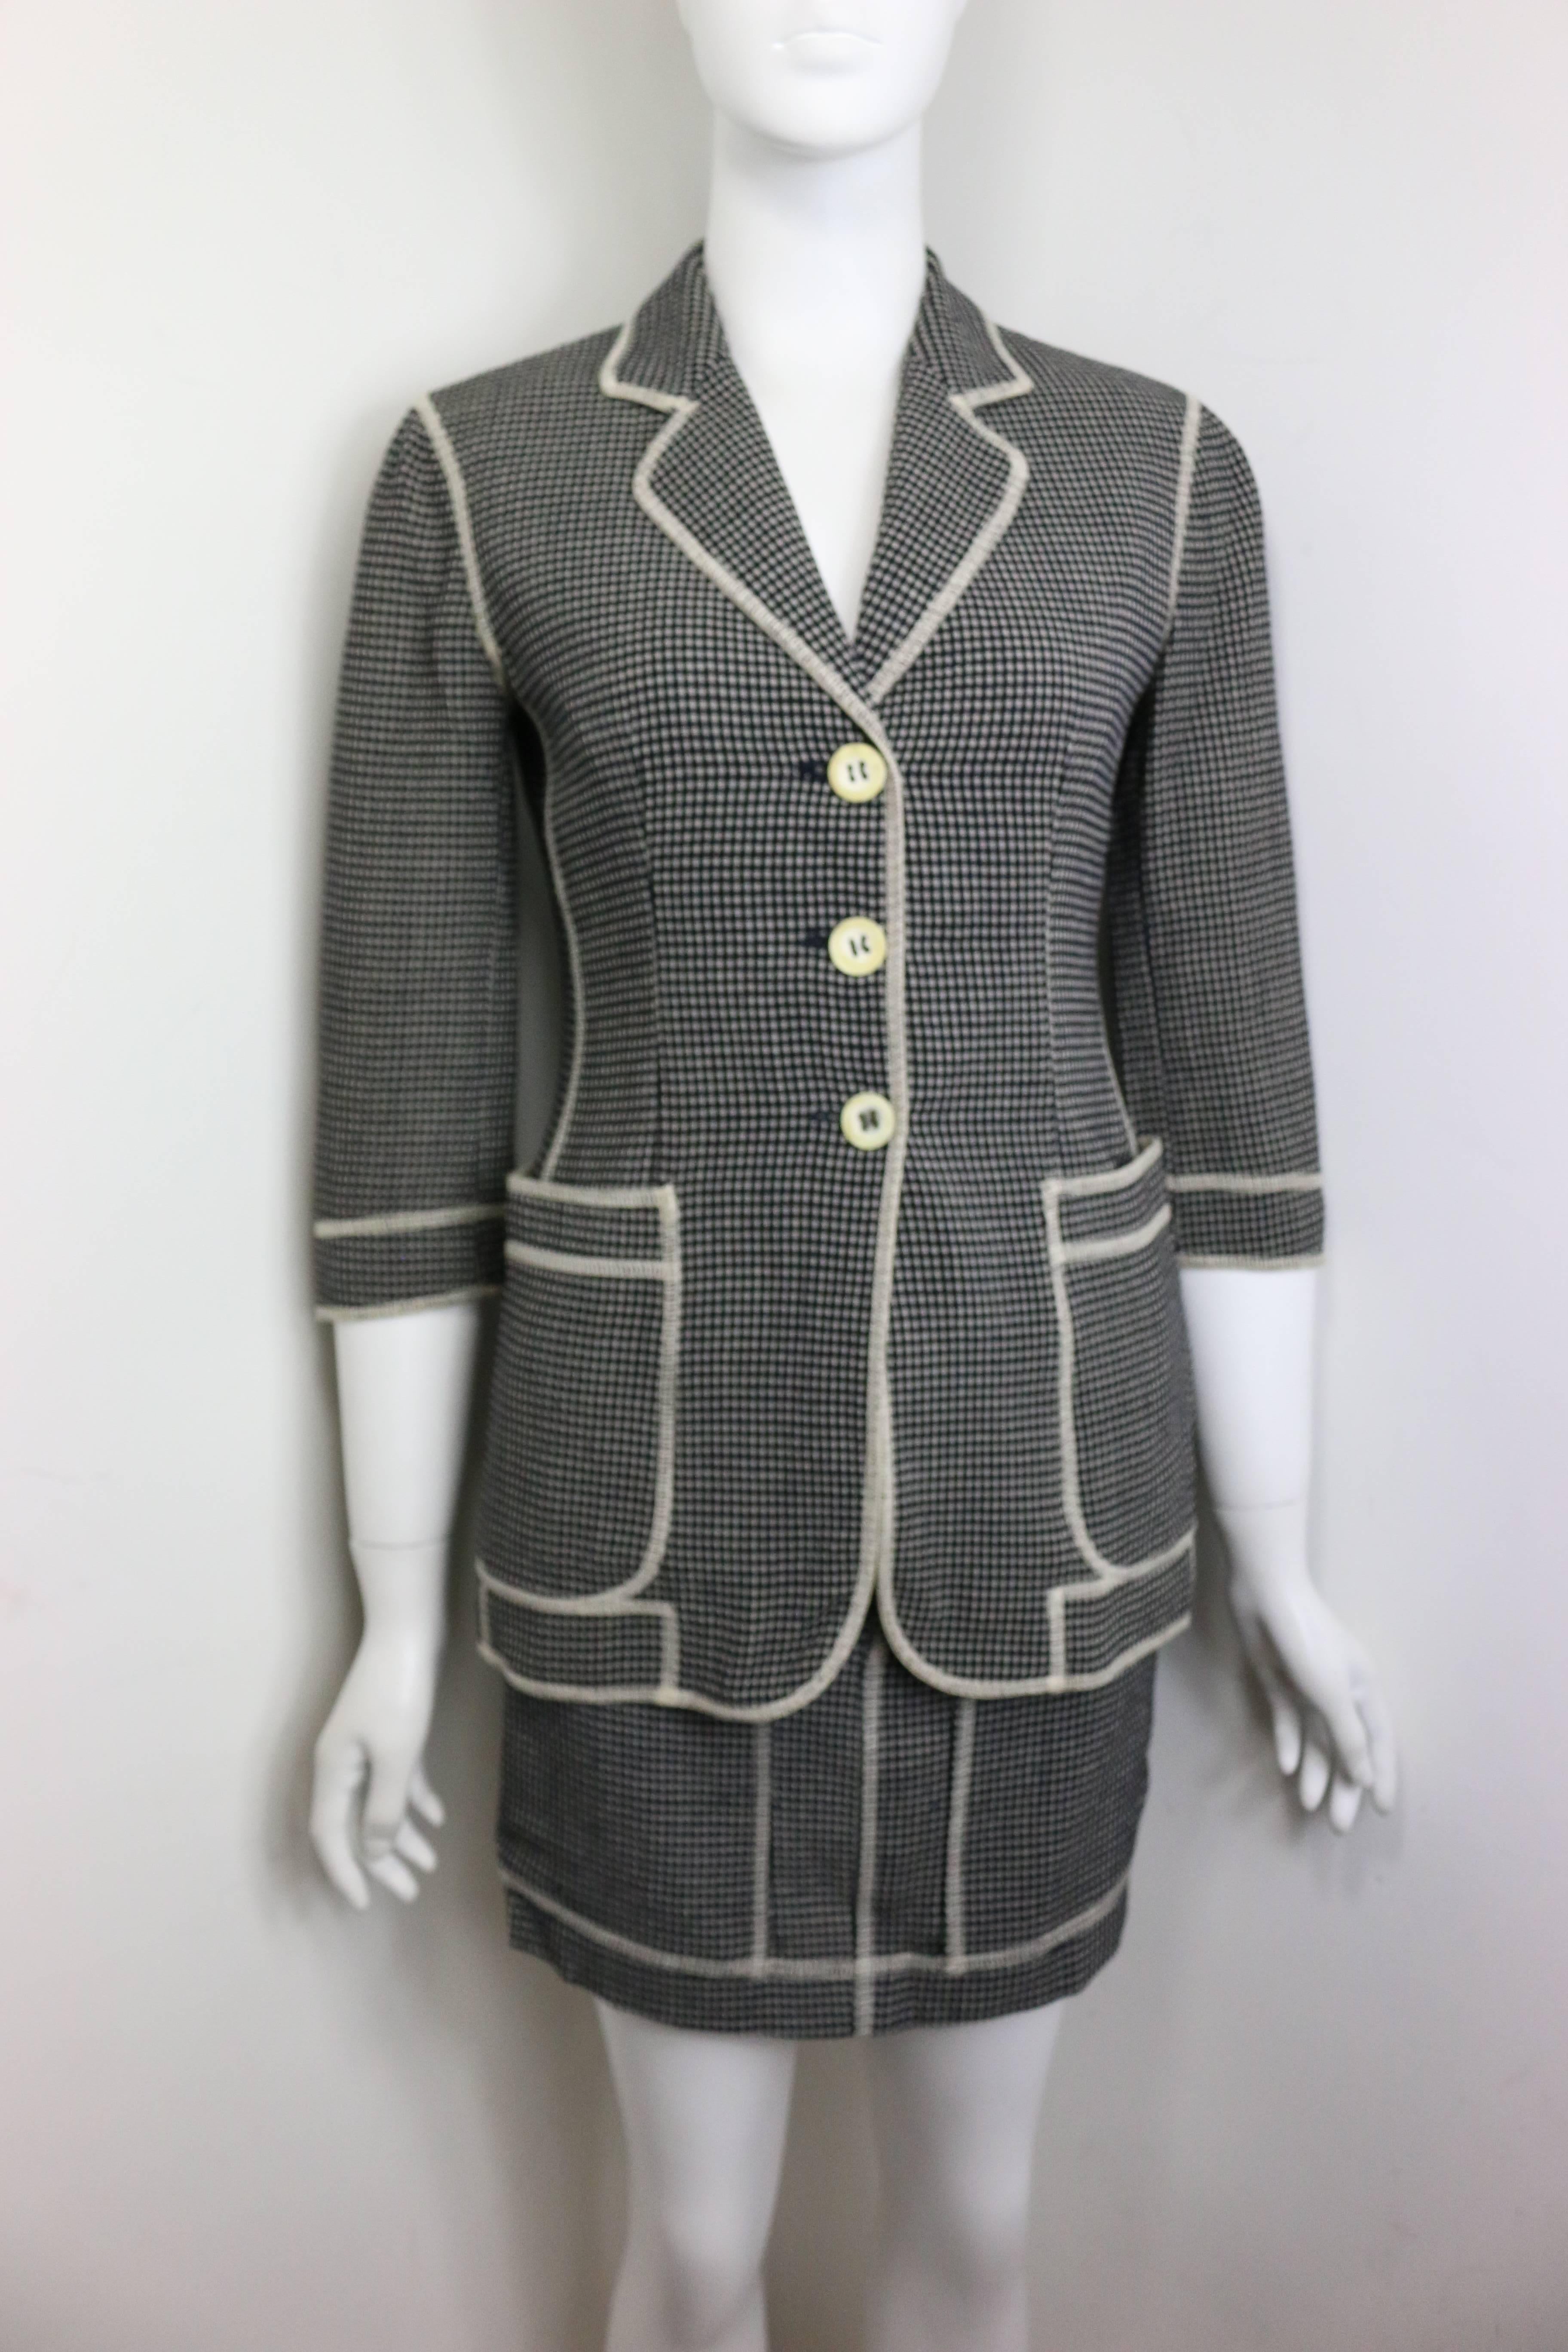 - Vintage 90s Moschino Couture en motif à carreaux noir et blanc avec des points de passepoil blancs ensemble veste et jupe. La veste a des manches trois quarts. Le mot 